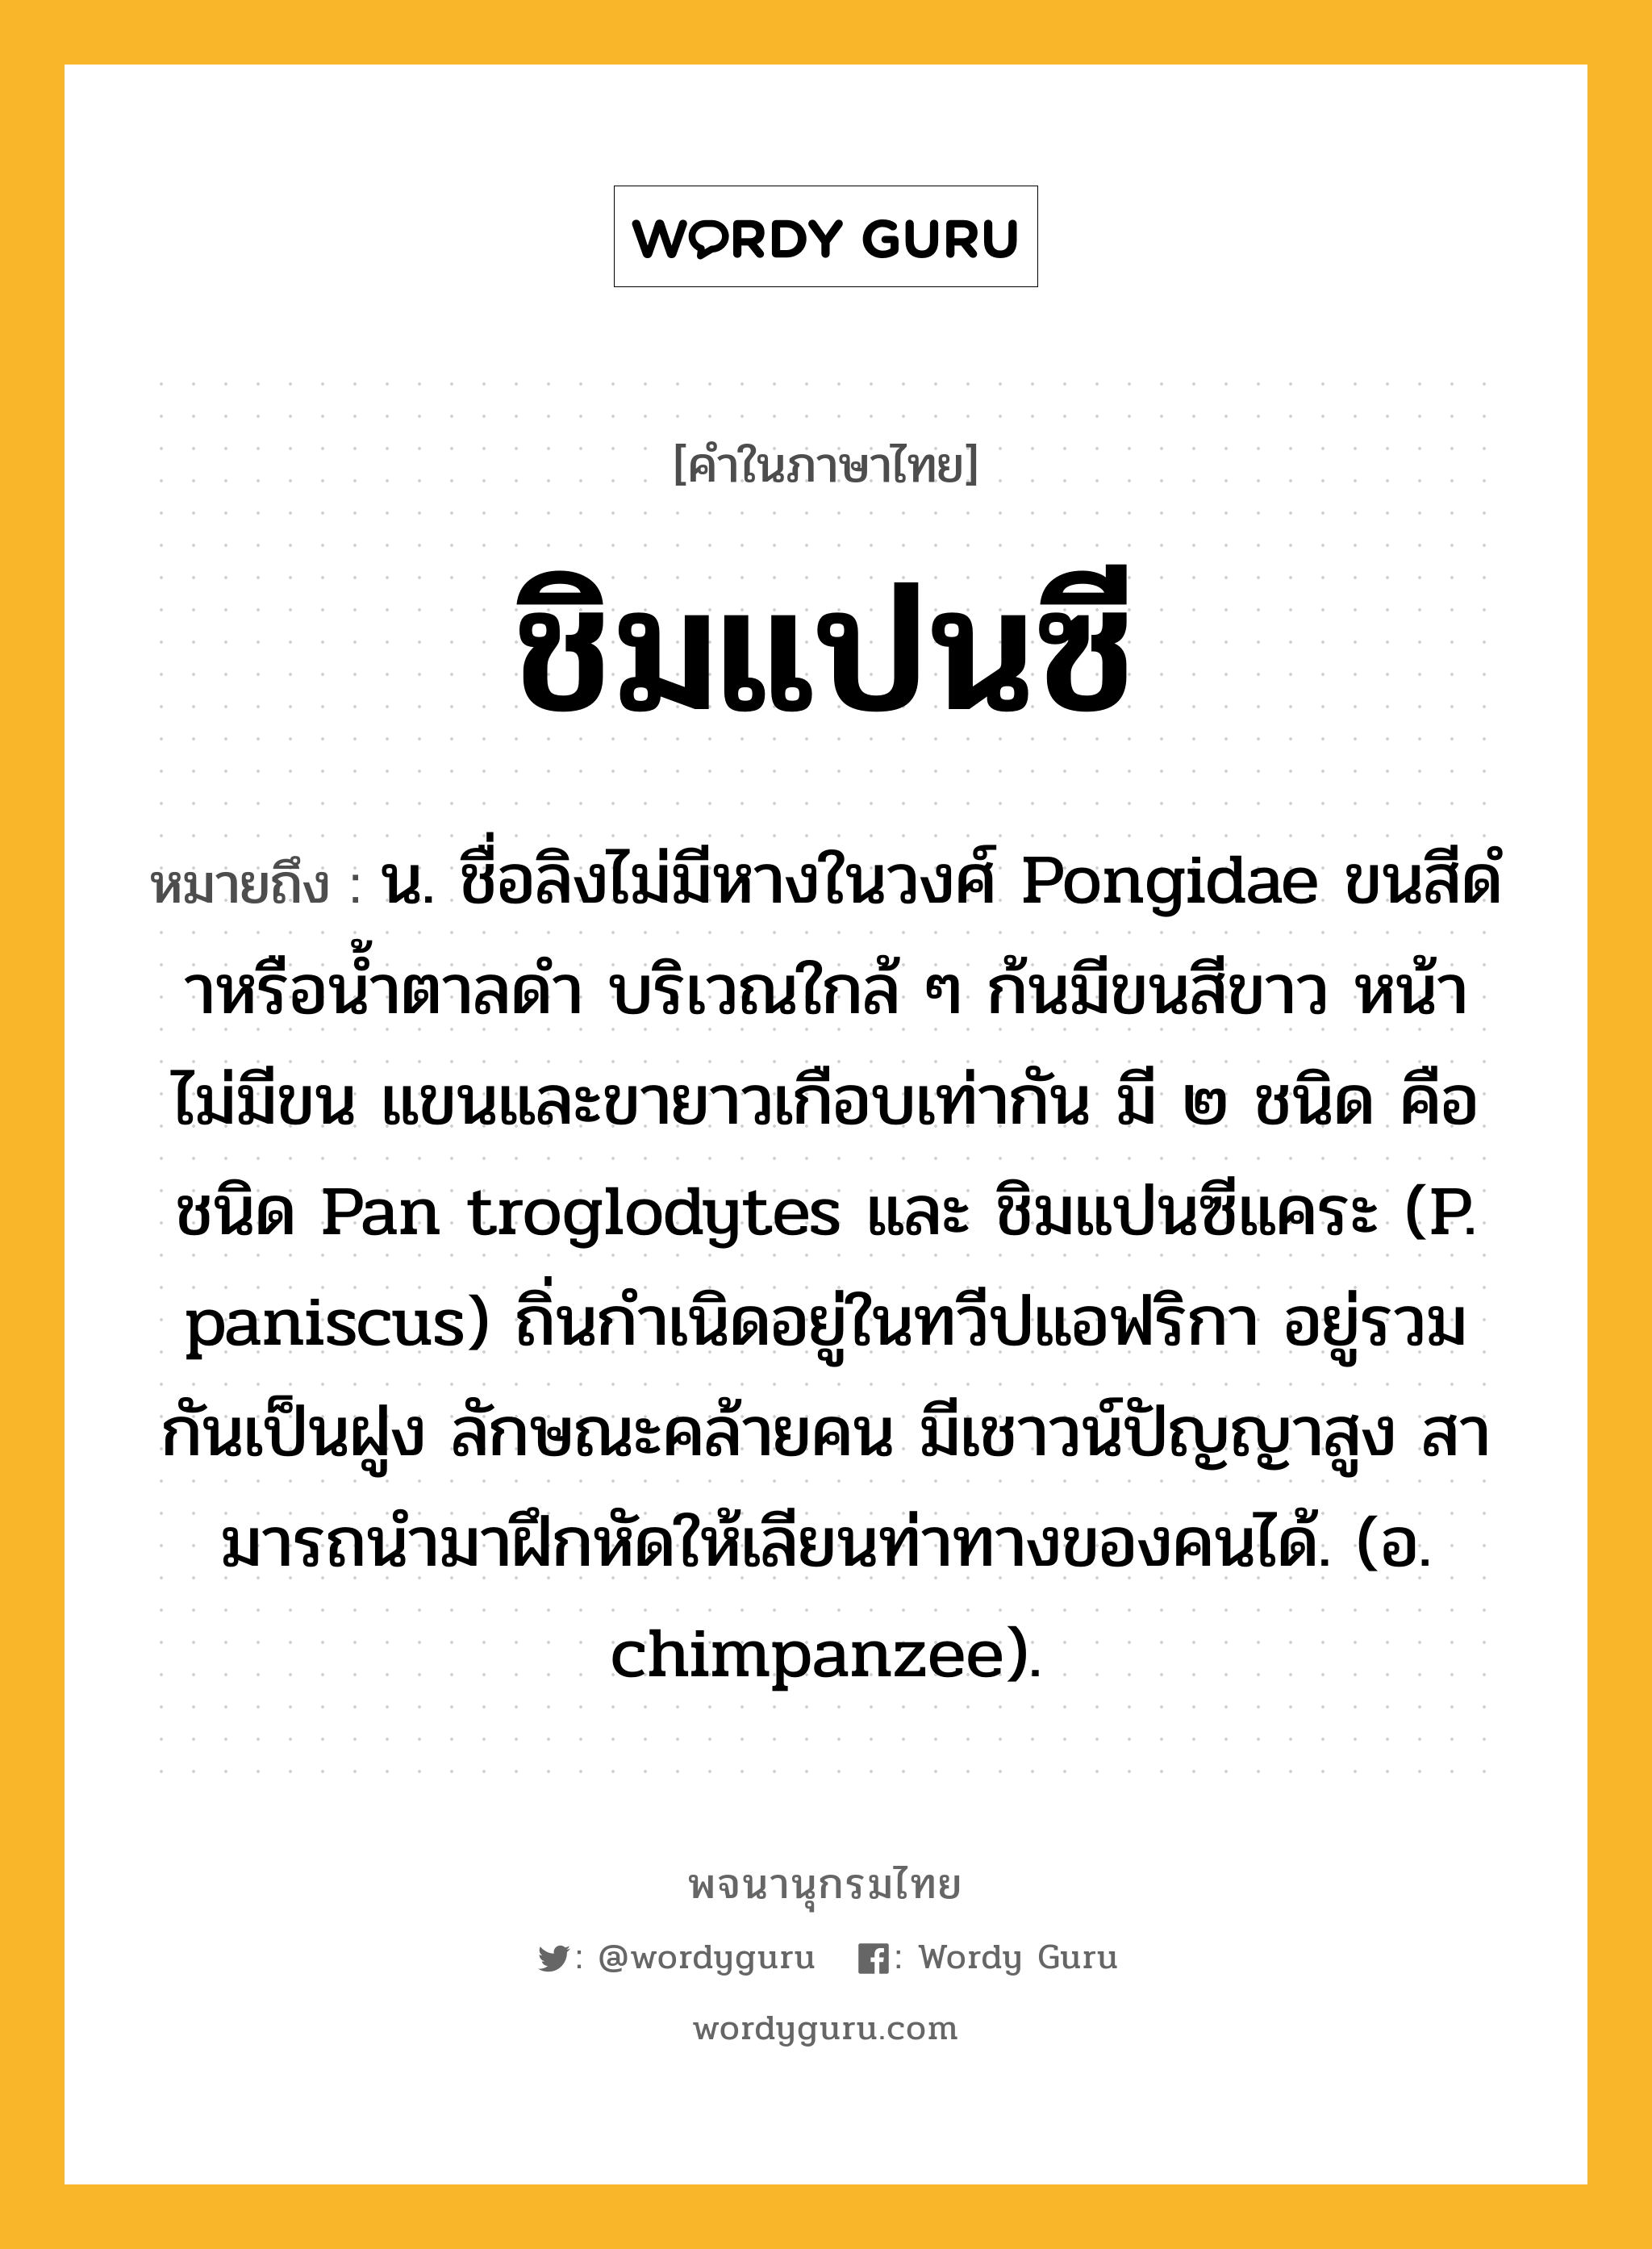 ชิมแปนซี หมายถึงอะไร?, คำในภาษาไทย ชิมแปนซี หมายถึง น. ชื่อลิงไม่มีหางในวงศ์ Pongidae ขนสีดําหรือน้ำตาลดำ บริเวณใกล้ ๆ ก้นมีขนสีขาว หน้าไม่มีขน แขนและขายาวเกือบเท่ากัน มี ๒ ชนิด คือ ชนิด Pan troglodytes และ ชิมแปนซีแคระ (P. paniscus) ถิ่นกําเนิดอยู่ในทวีปแอฟริกา อยู่รวมกันเป็นฝูง ลักษณะคล้ายคน มีเชาวน์ปัญญาสูง สามารถนํามาฝึกหัดให้เลียนท่าทางของคนได้. (อ. chimpanzee).